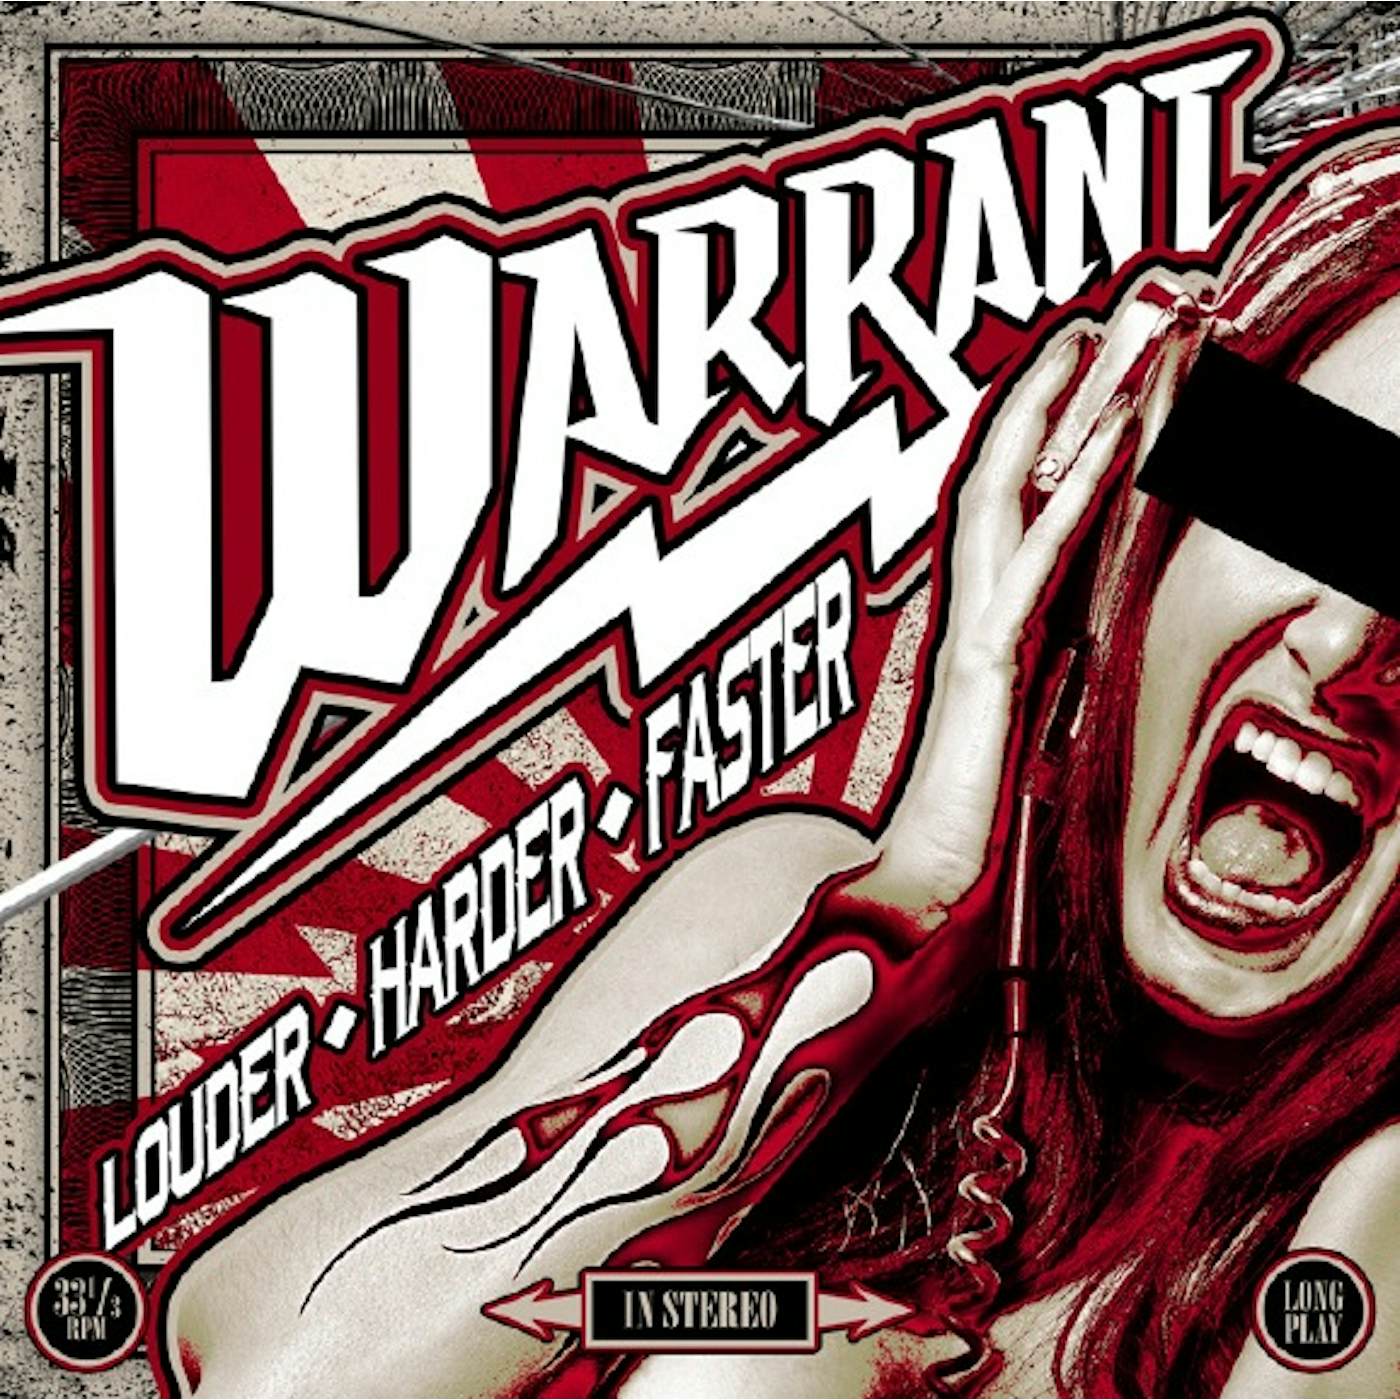 Harder louder. Группа warrant. Warrant альбомы. Обложки альбомов рок групп.